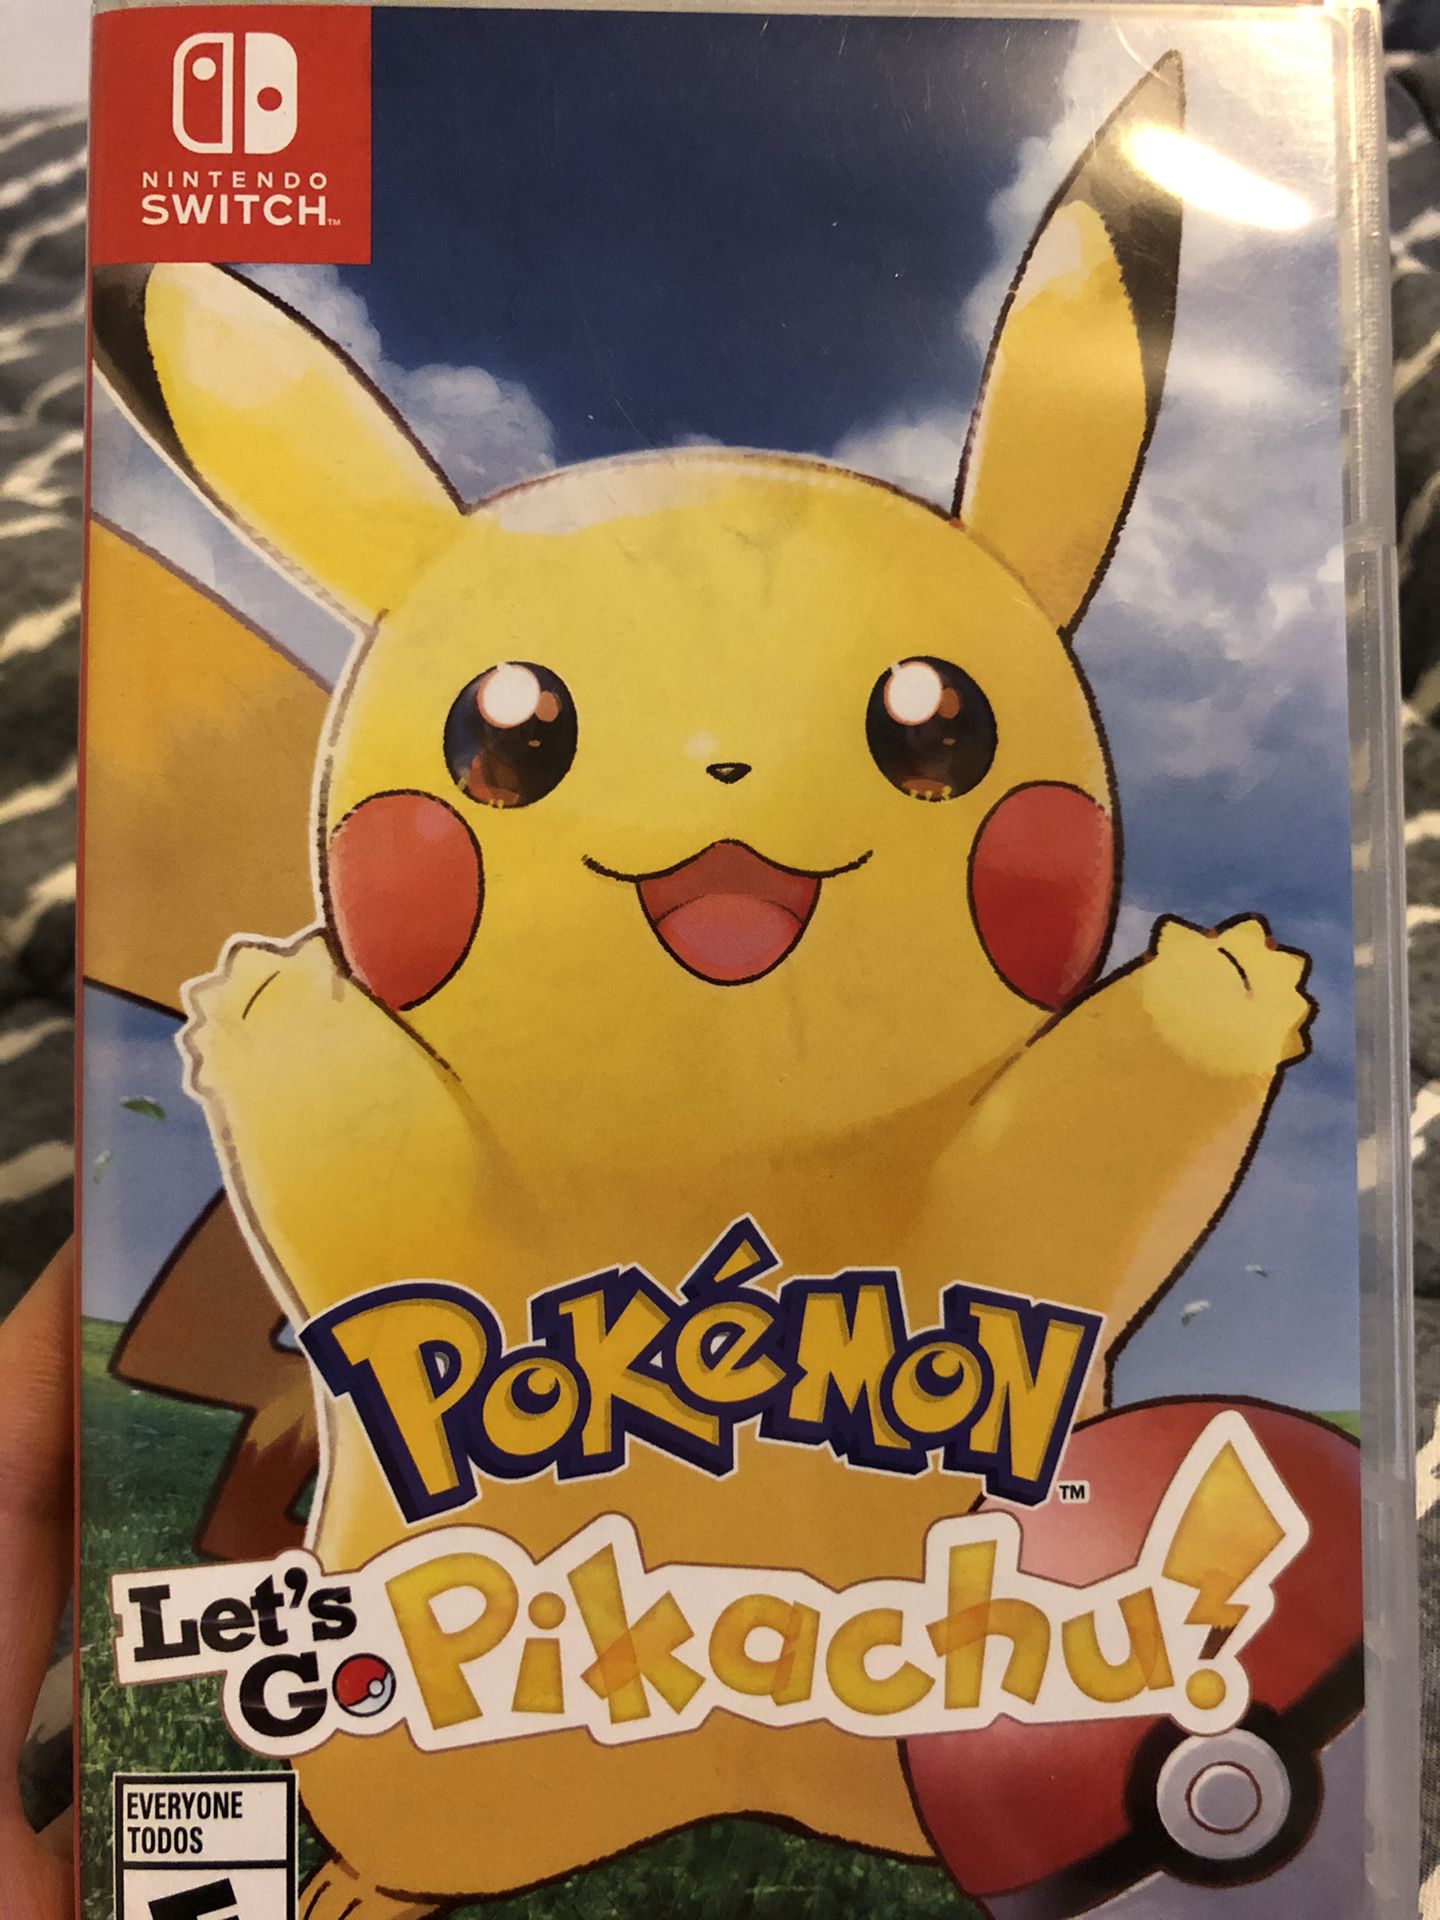 Pokémon Let’s Go Pikachu!! Nintendo Switch Game